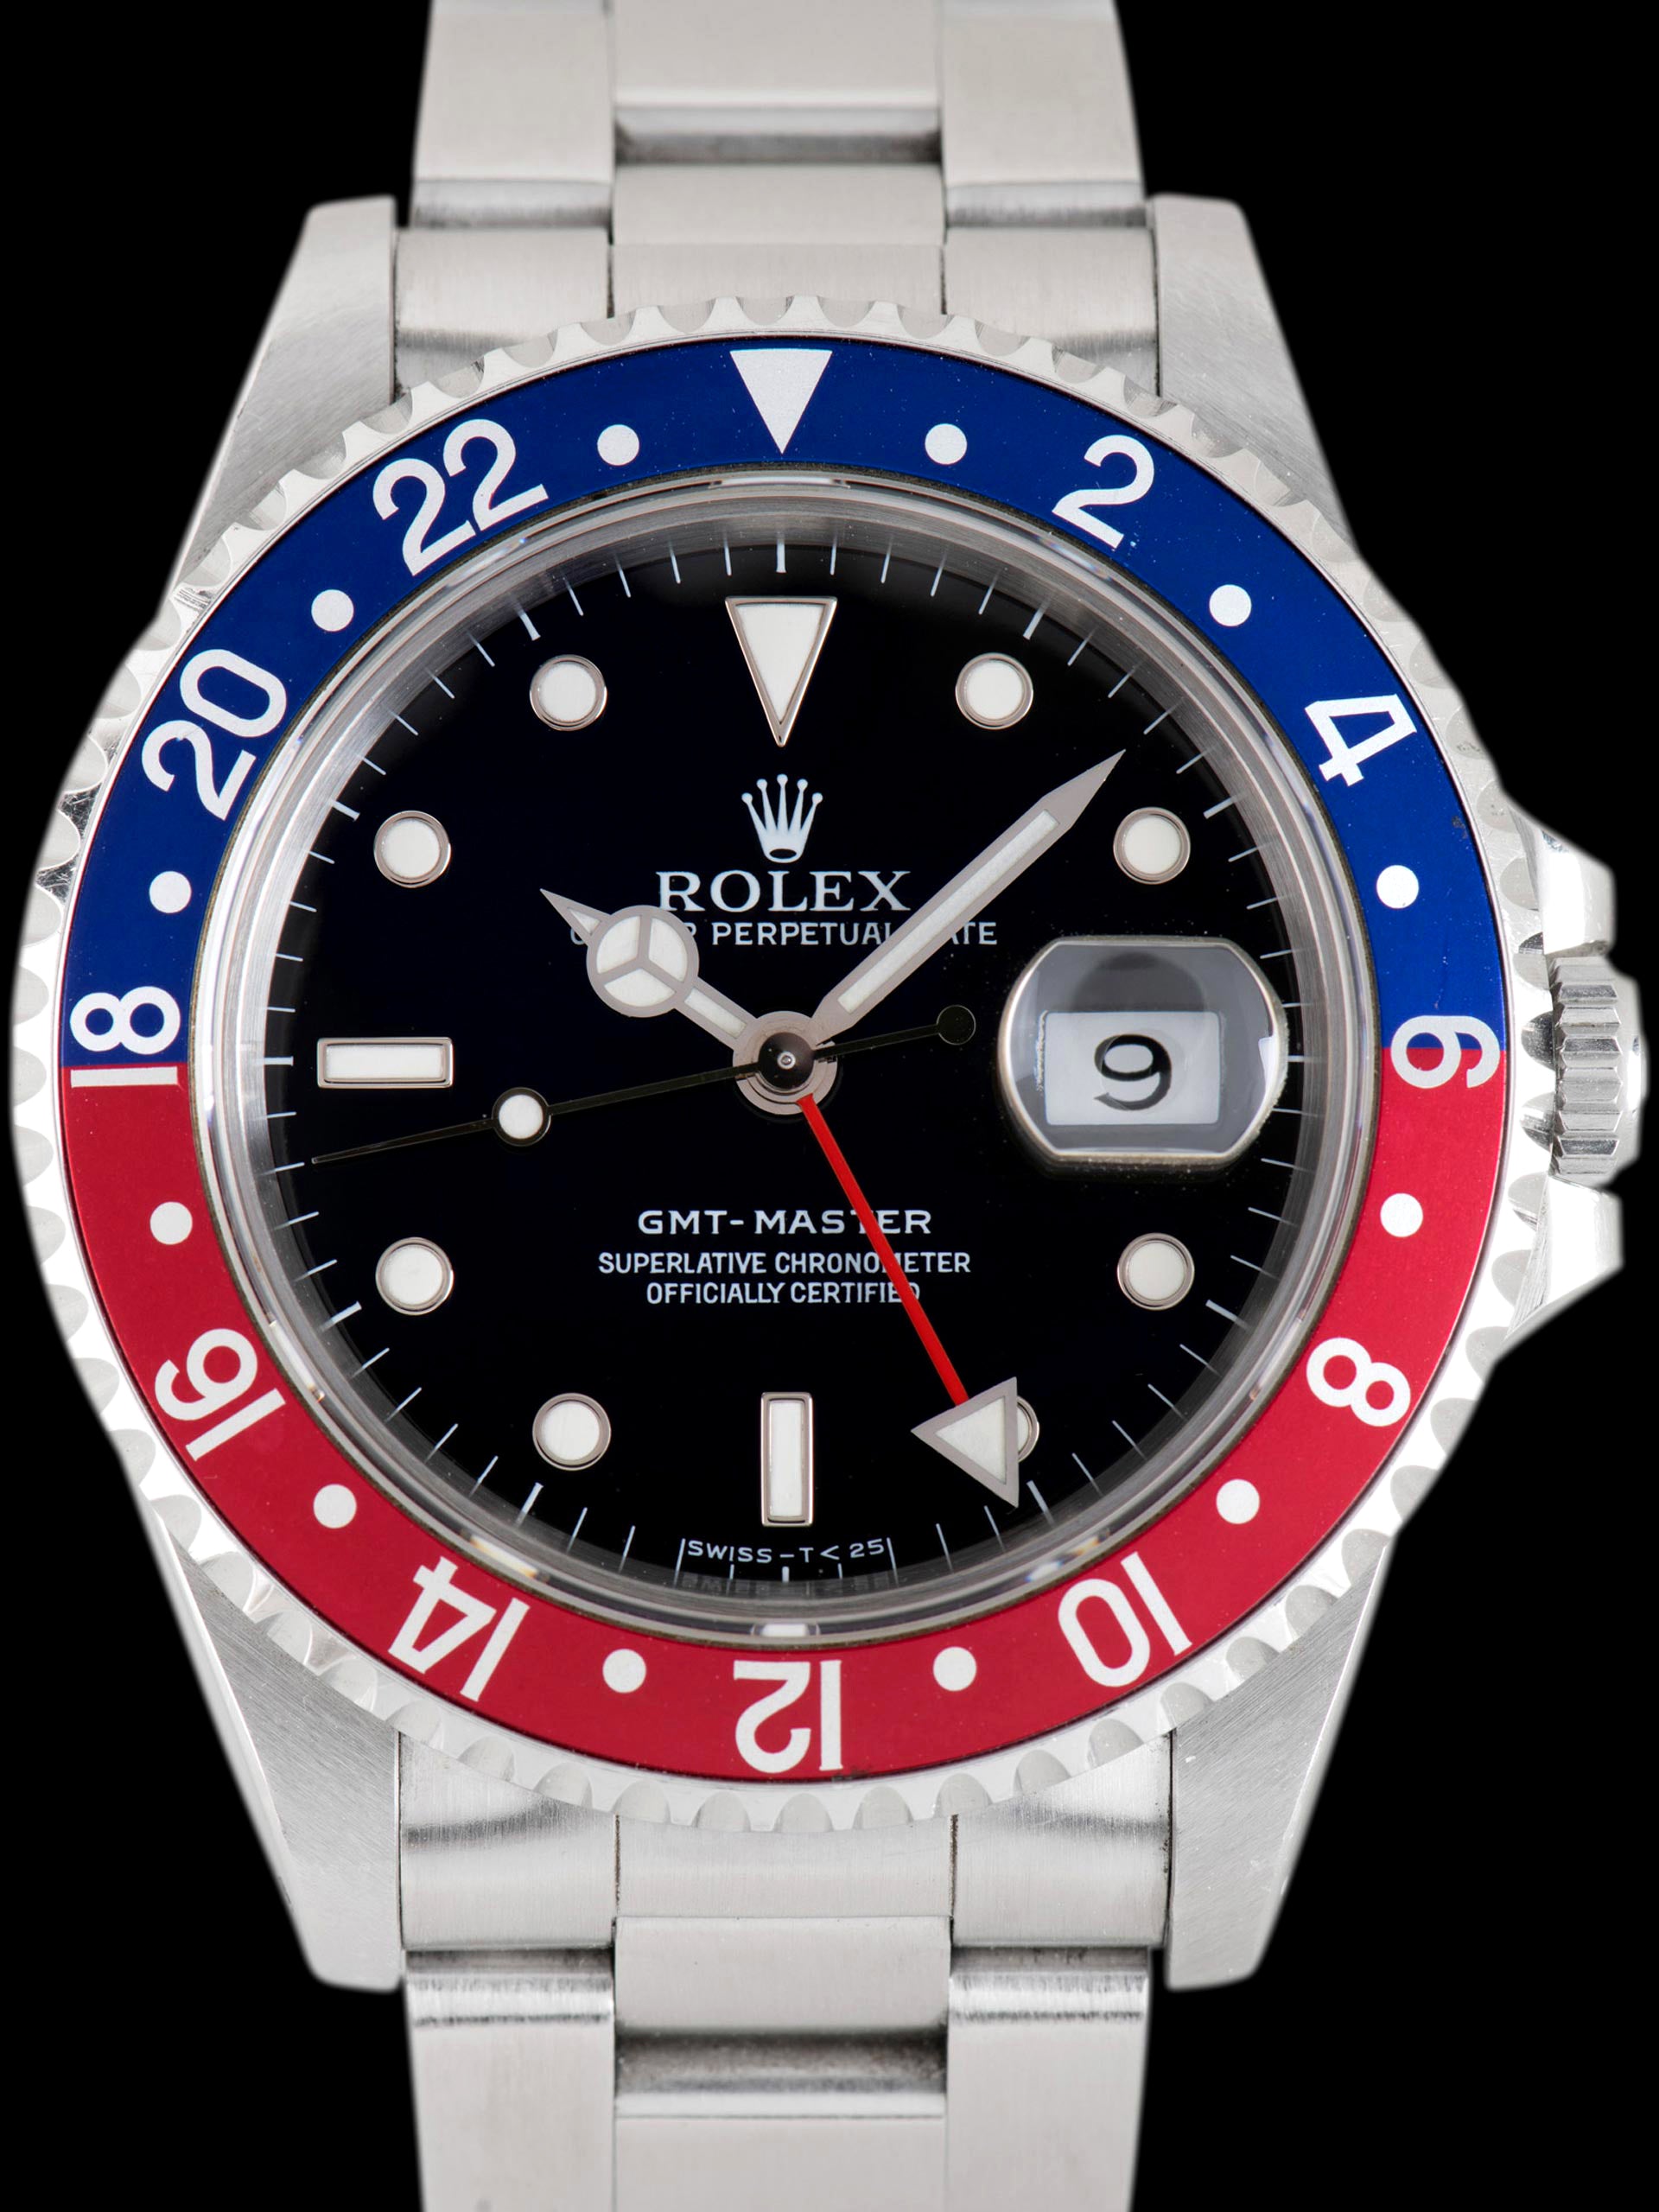 1991 Rolex GMT-Master (Ref. 16700) "Pepsi"